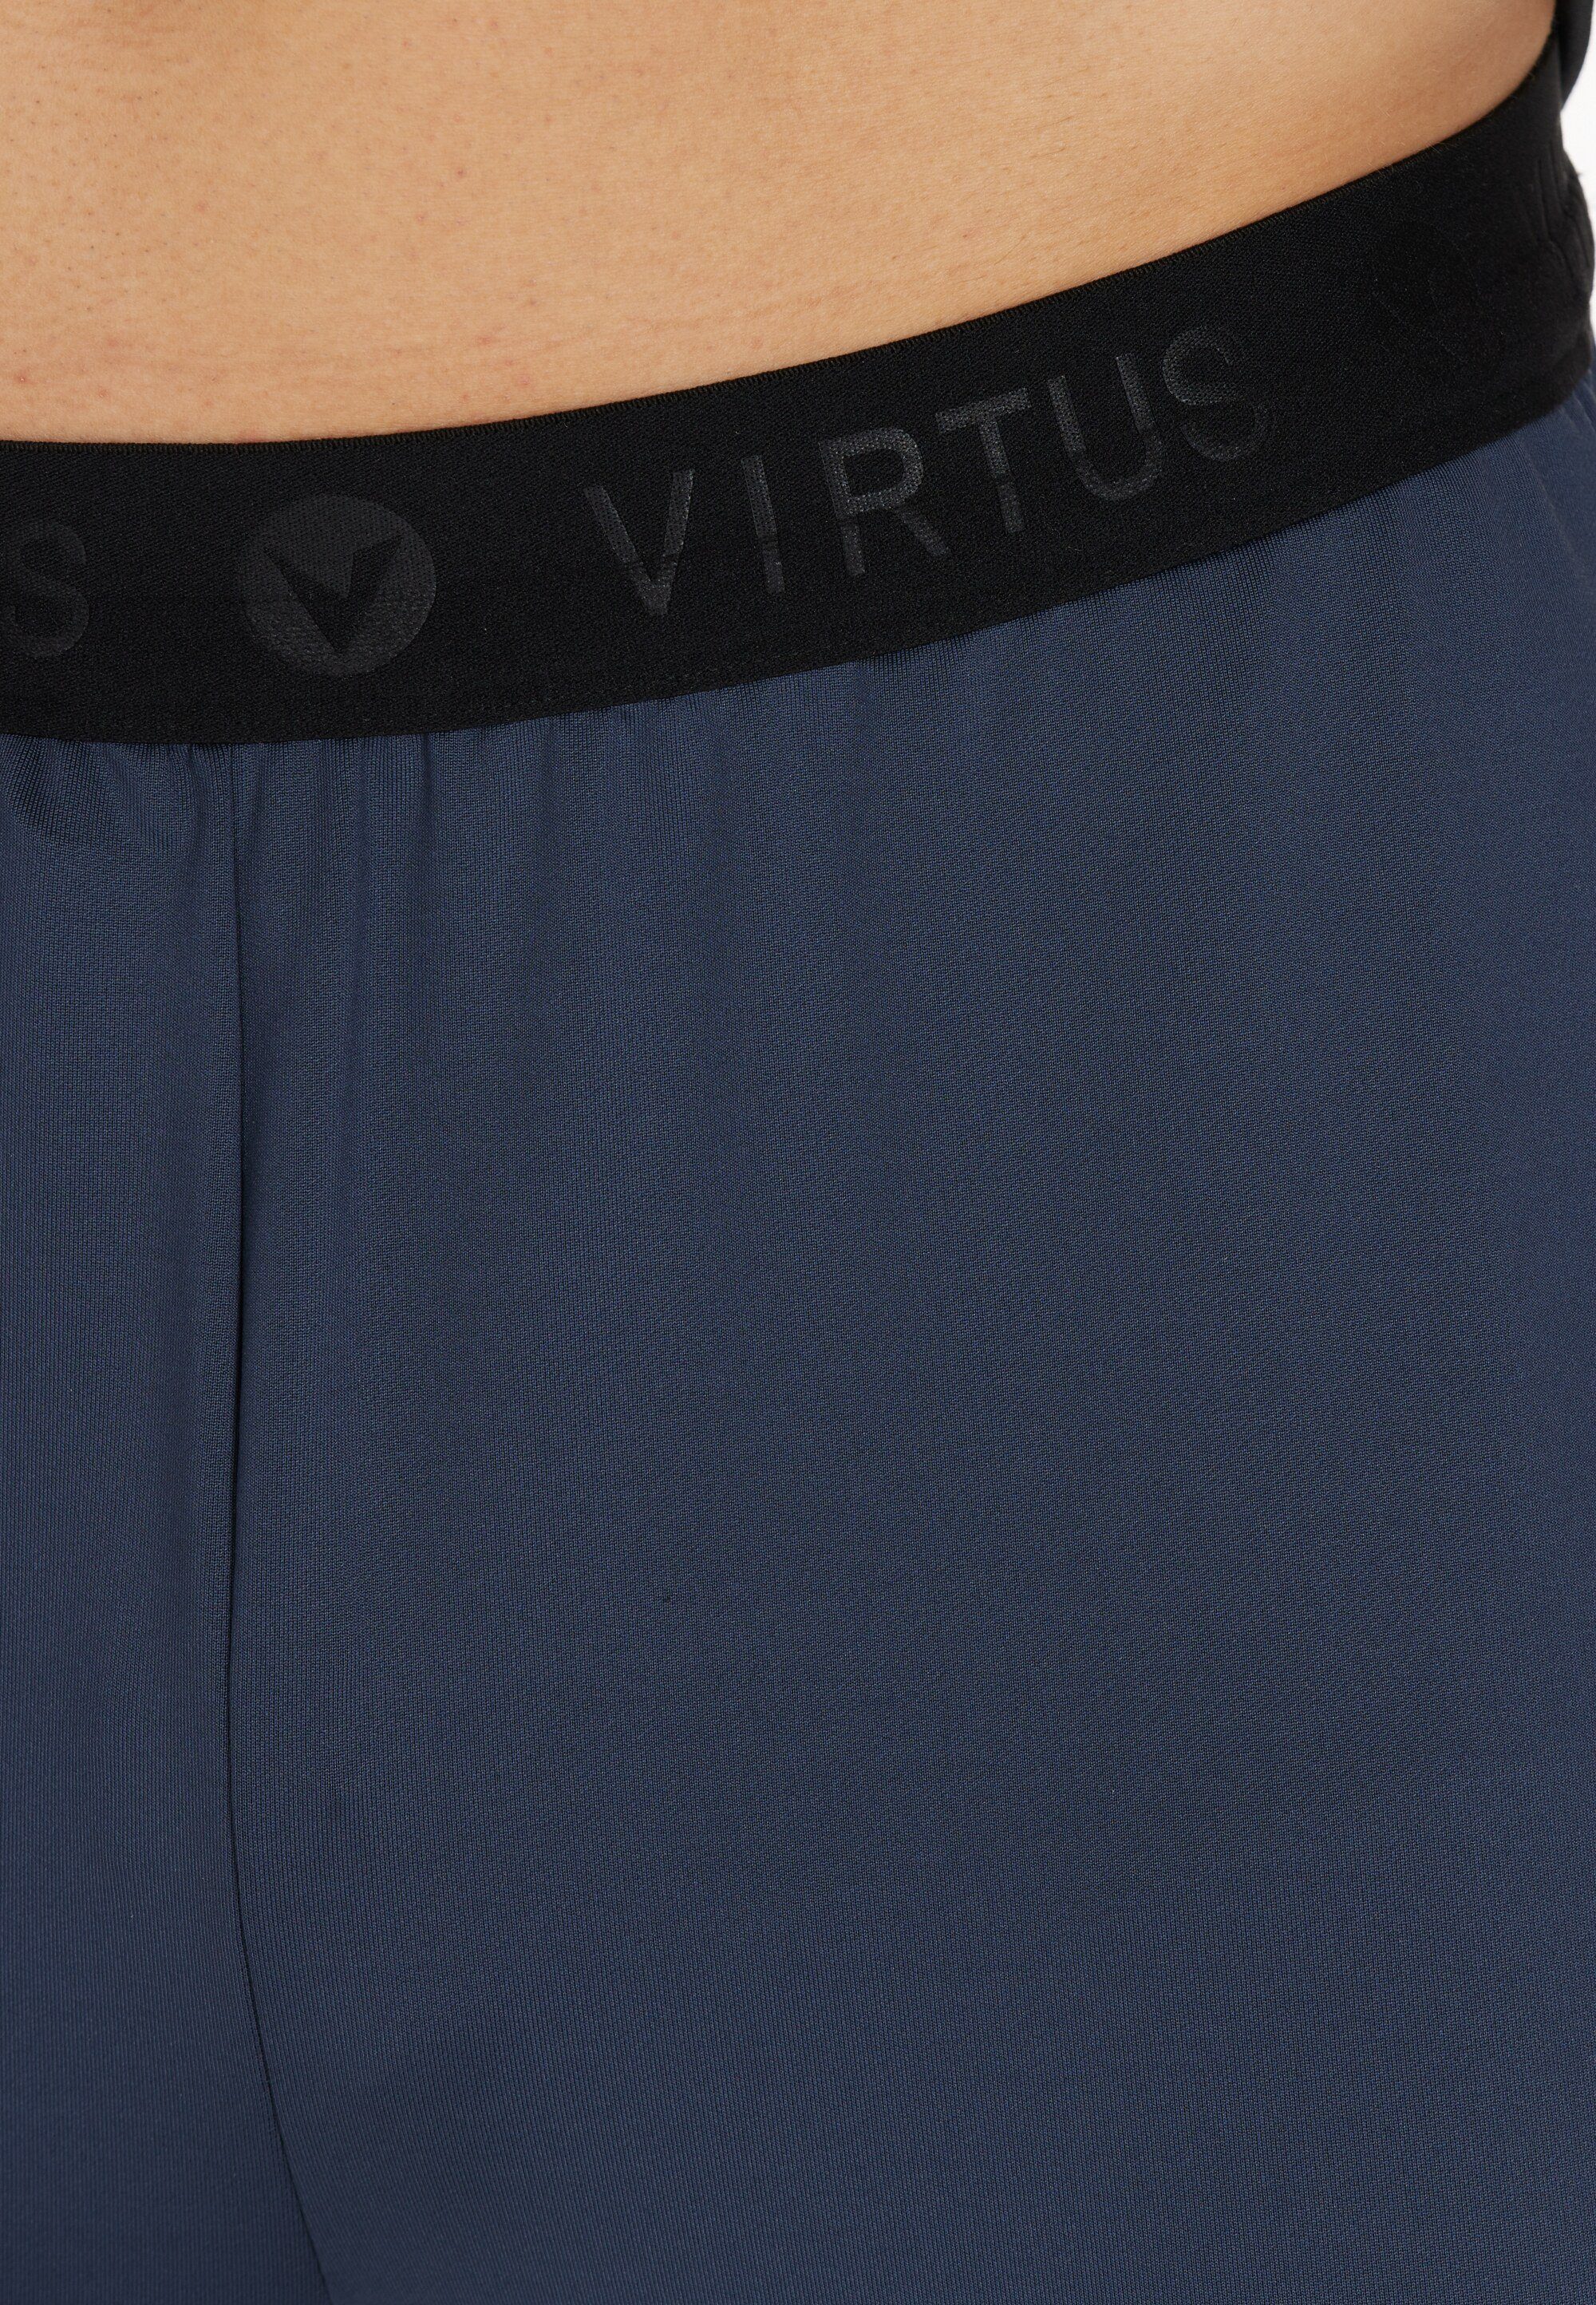 mit blau-schwarz Virtus Benny praktischen Sporthose Seitentaschen